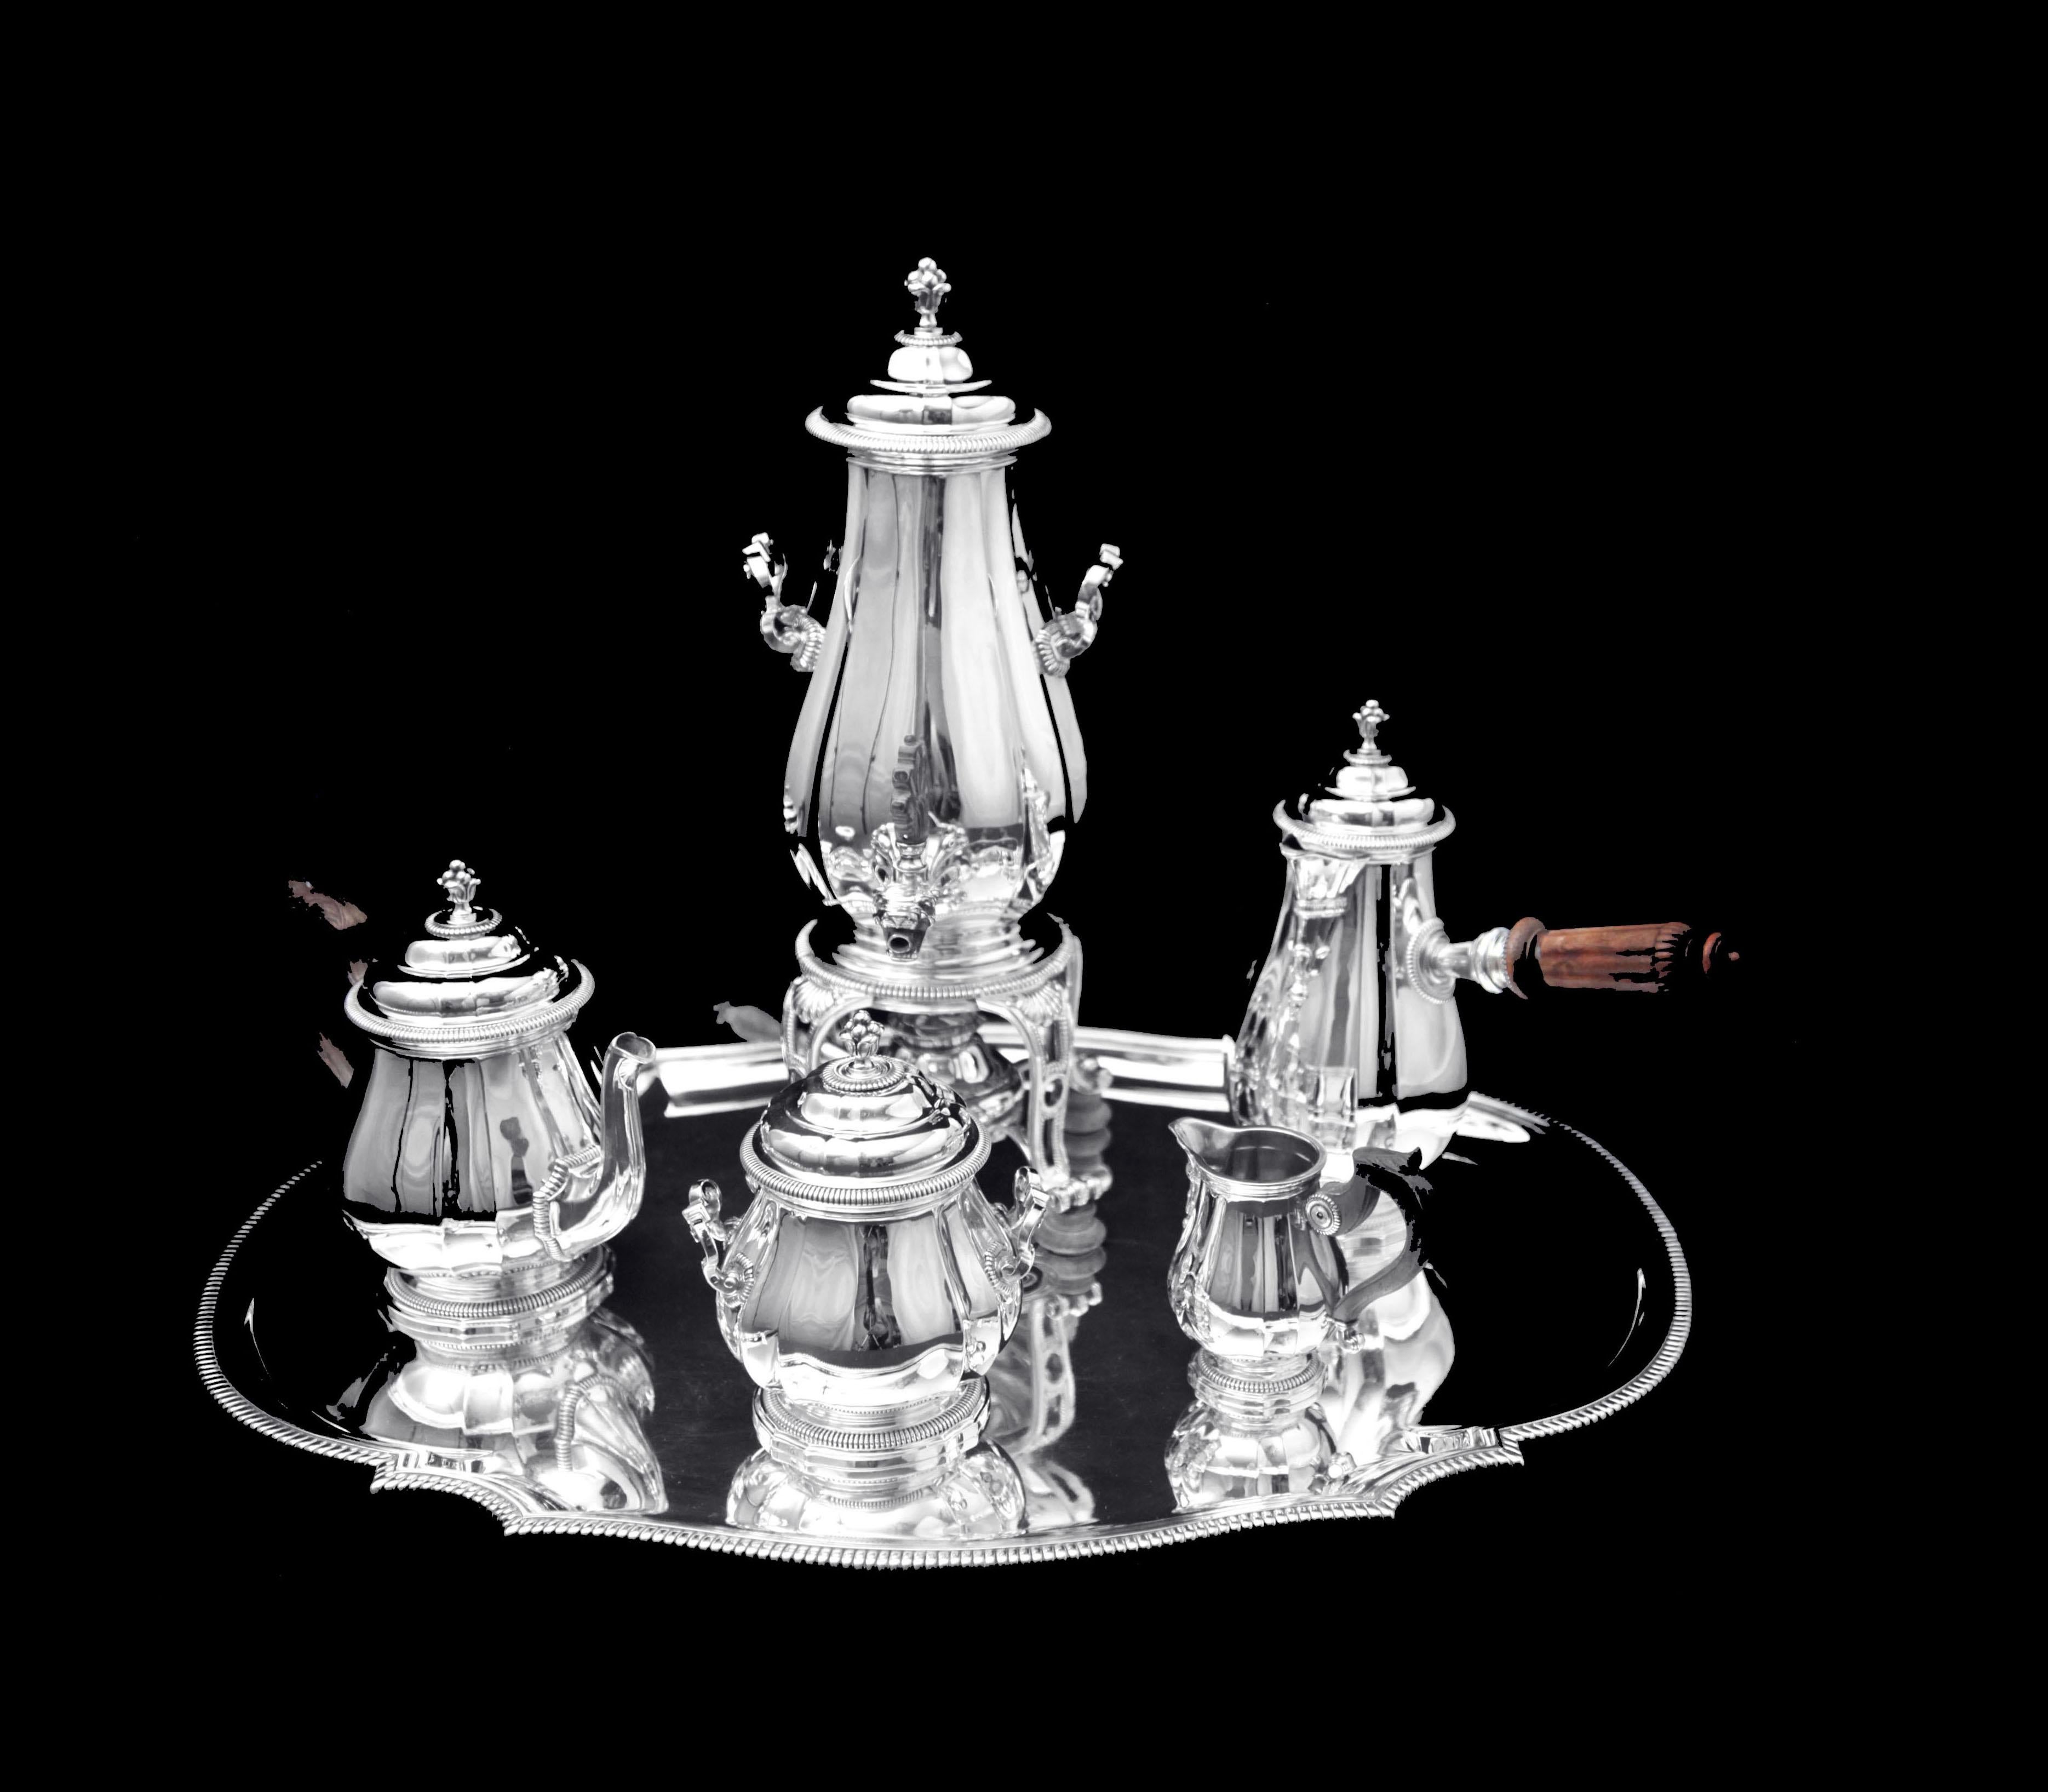 En provenance directe d'un hôtel particulier à Paris, un superbe service à thé Louis XVI en argent 950 du 19e siècle, composé de 6 pièces, réalisé par le premier orfèvre français 